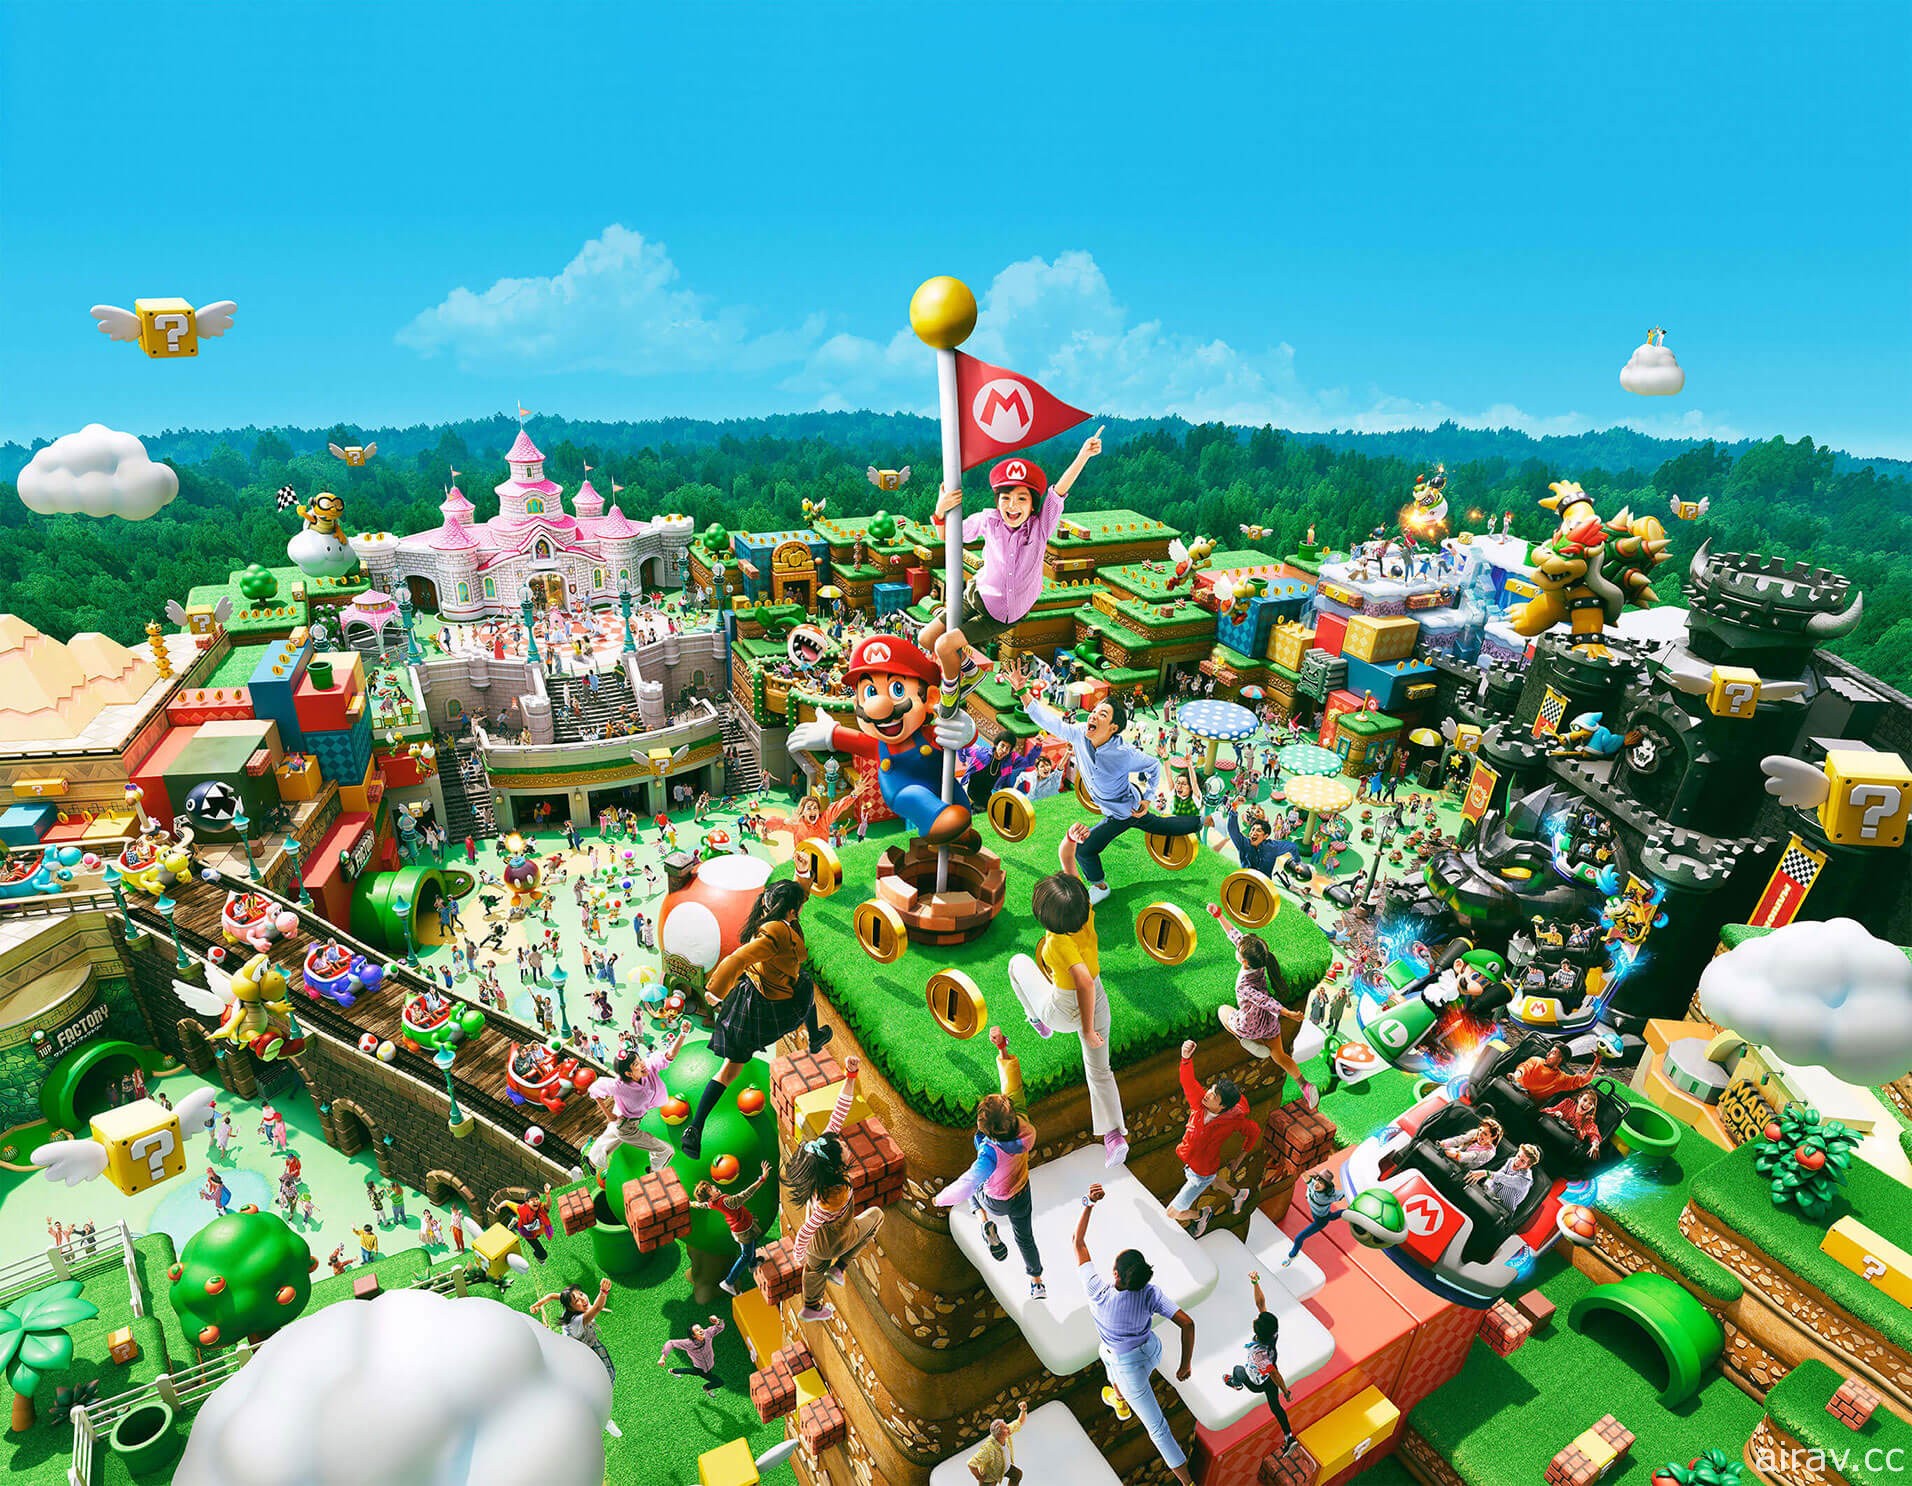 梦幻电玩乐园“超级任天堂世界”官方网站开张 详细介绍园内各项游乐设施